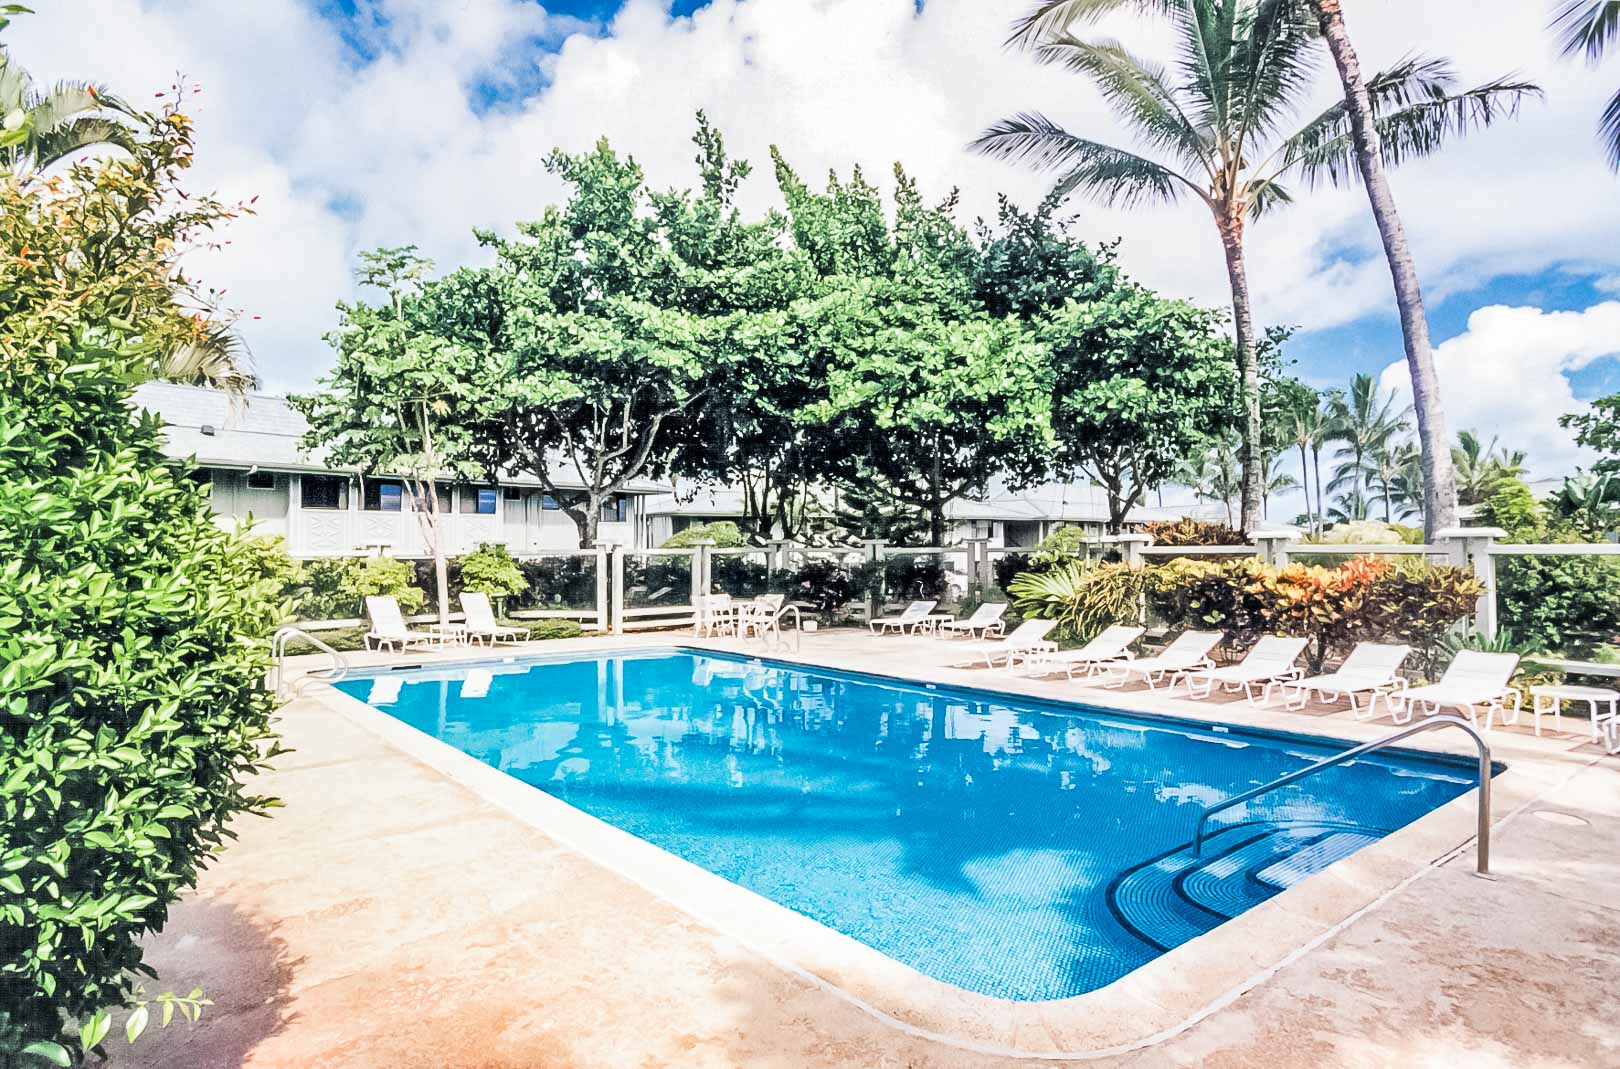 A crisp pool at VRI's Alii Kai Resort in Hawaii